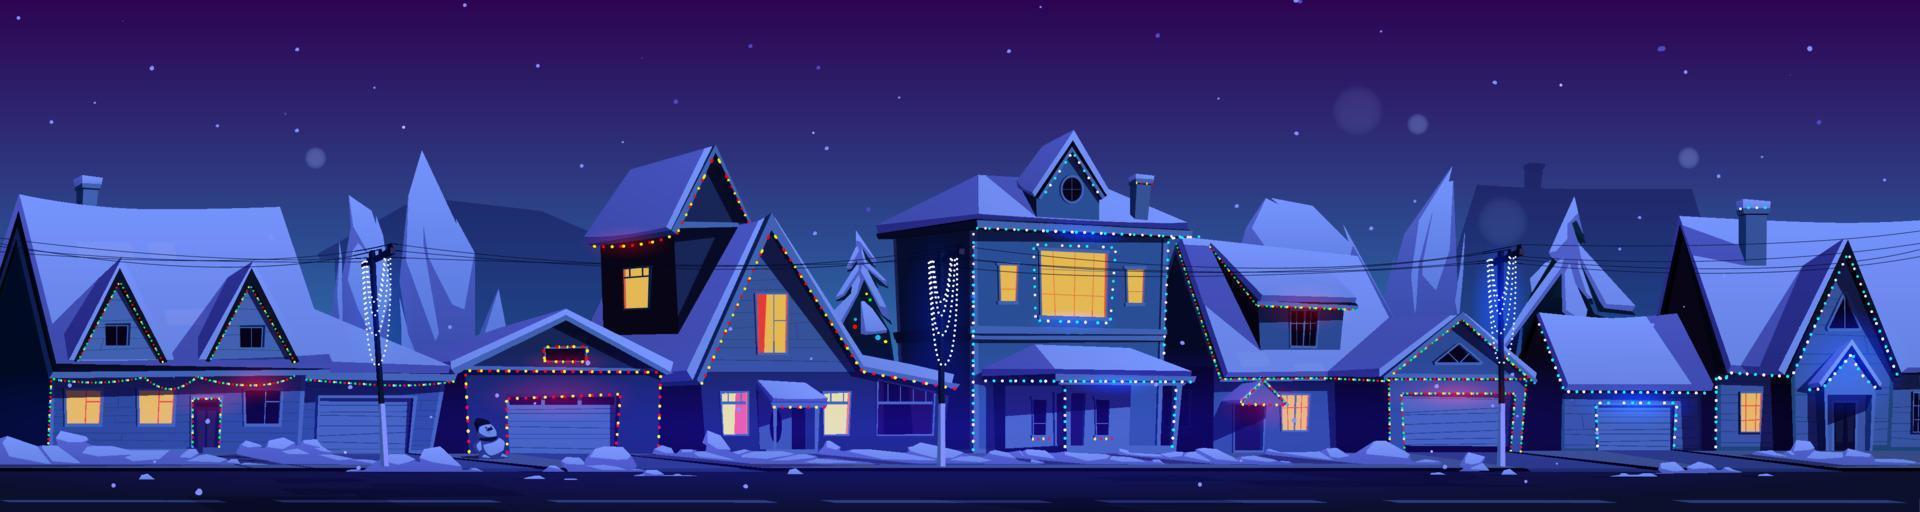 Wohnhäuser mit Weihnachtsdekoration vektor